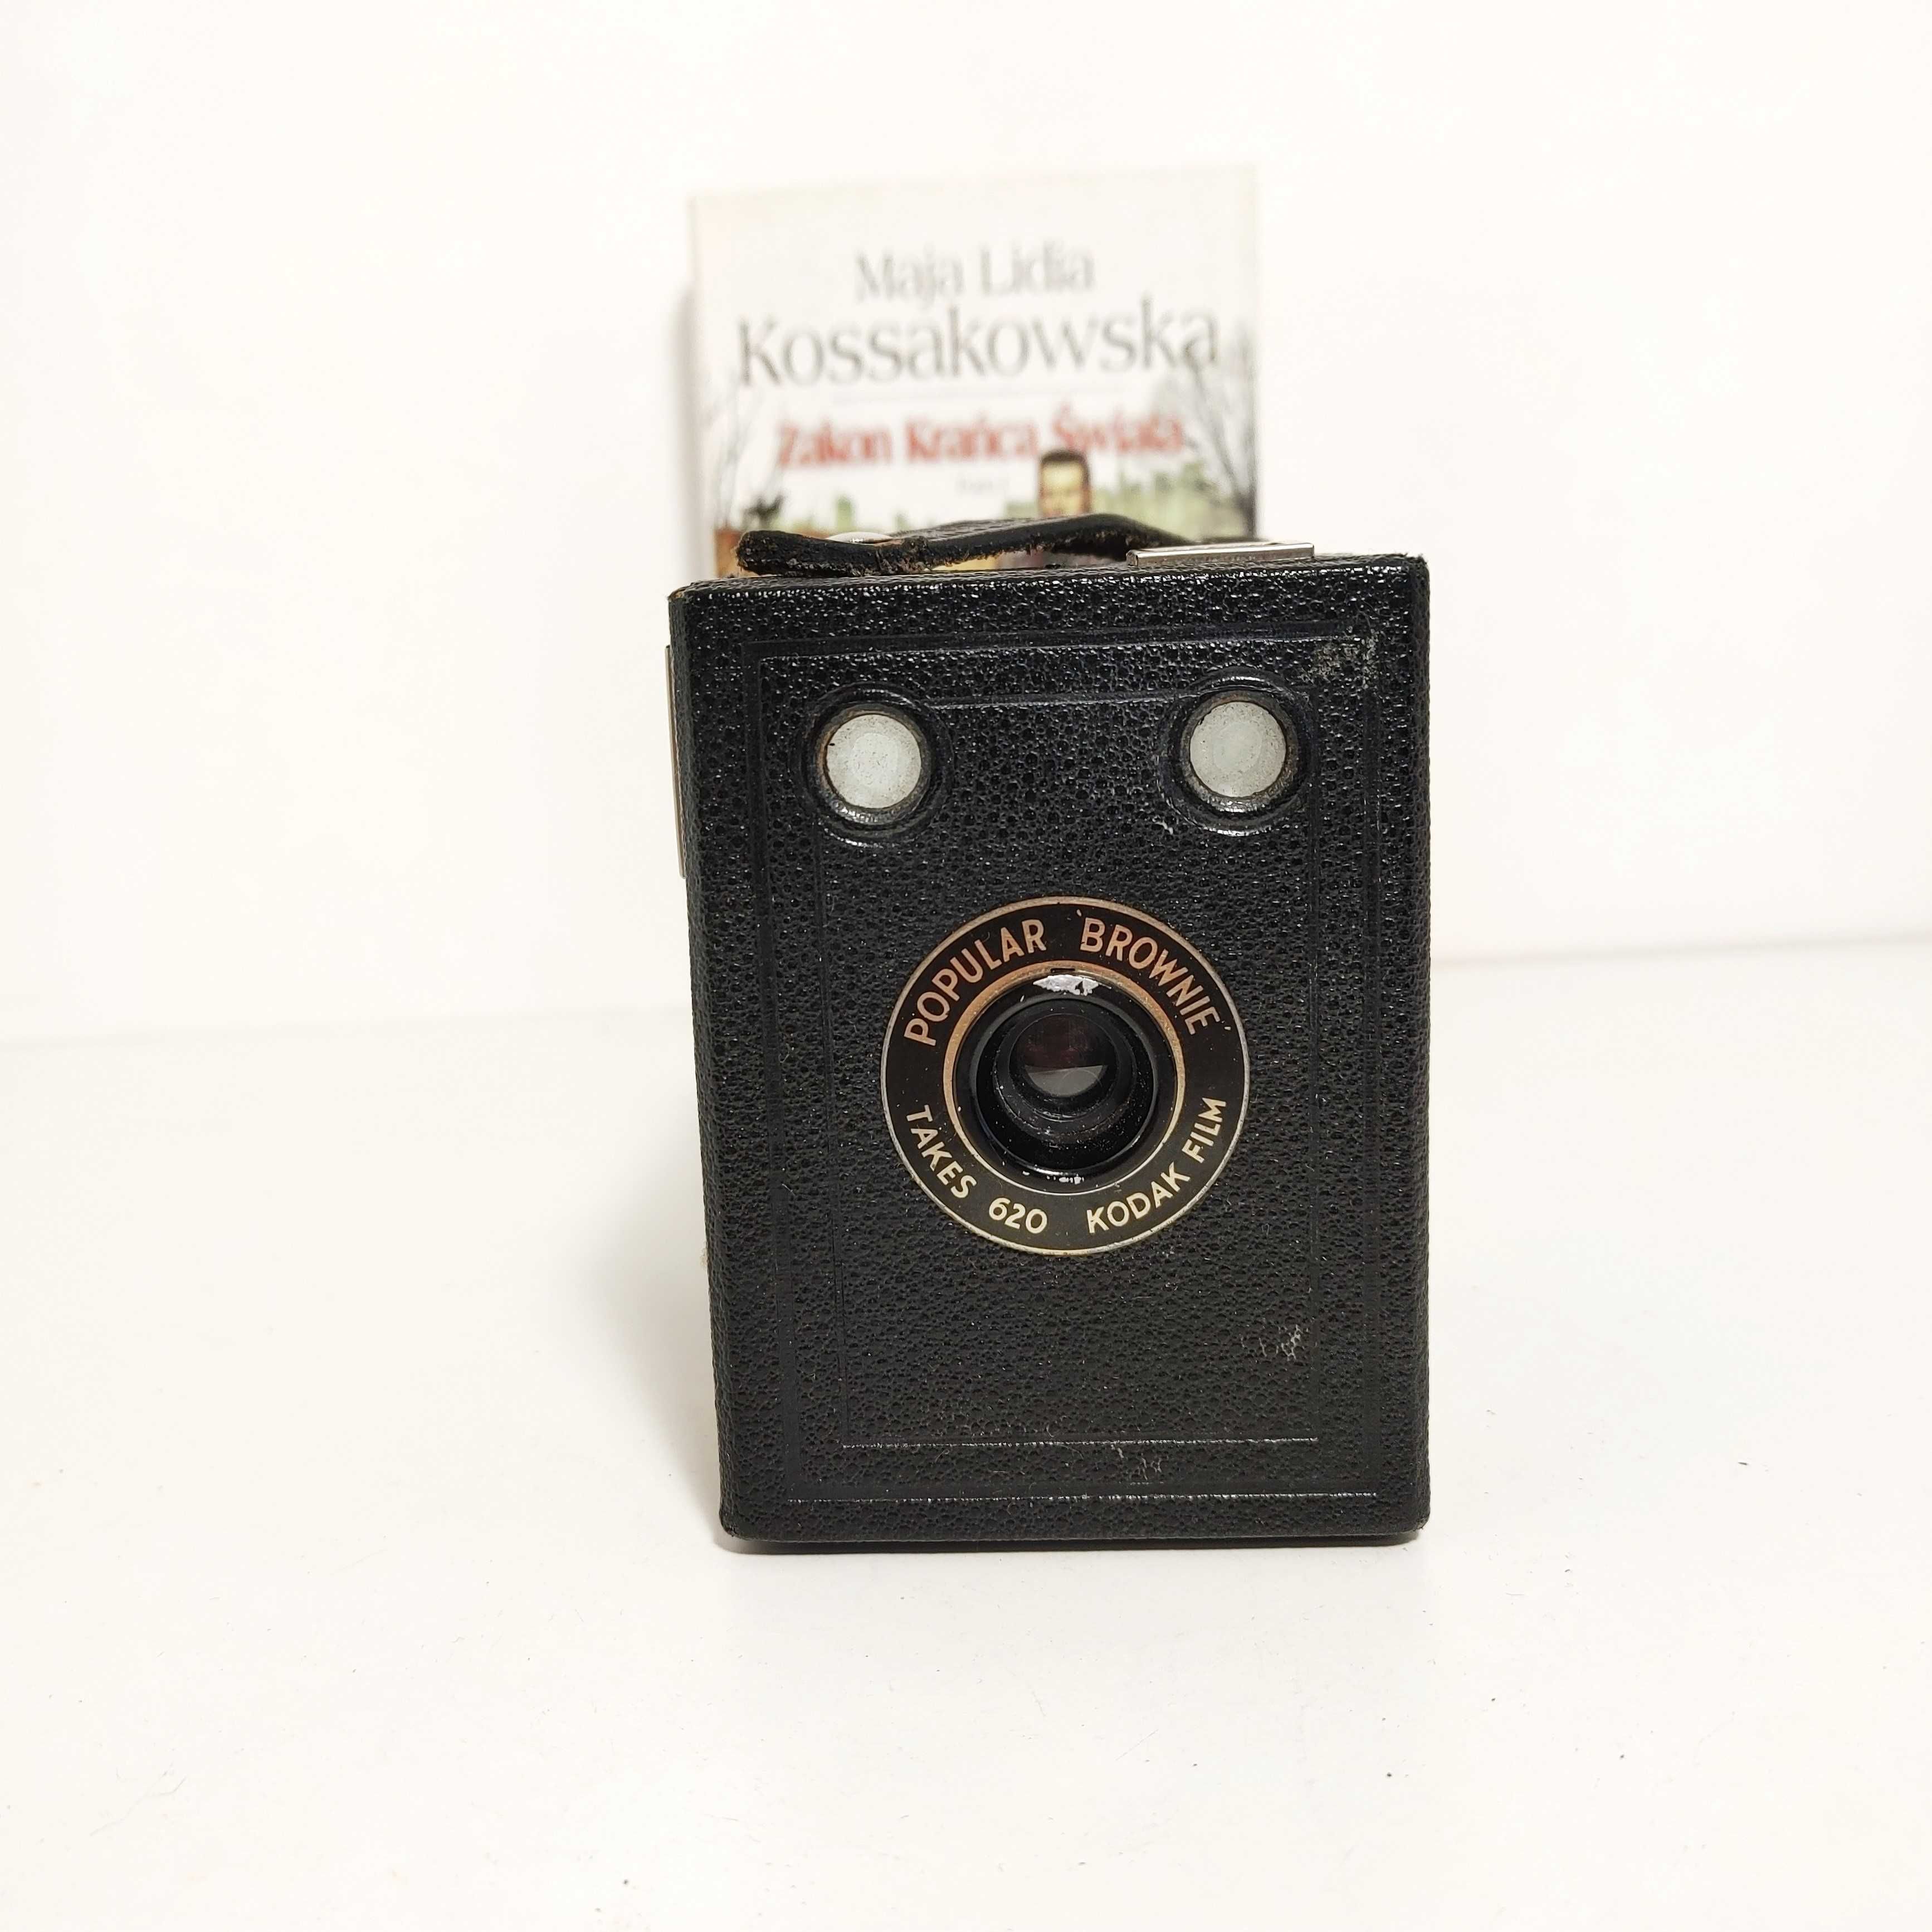 Pudełkowy aparat fotograficzny KODAK Box Brownie Popular 1937 r. Ładny